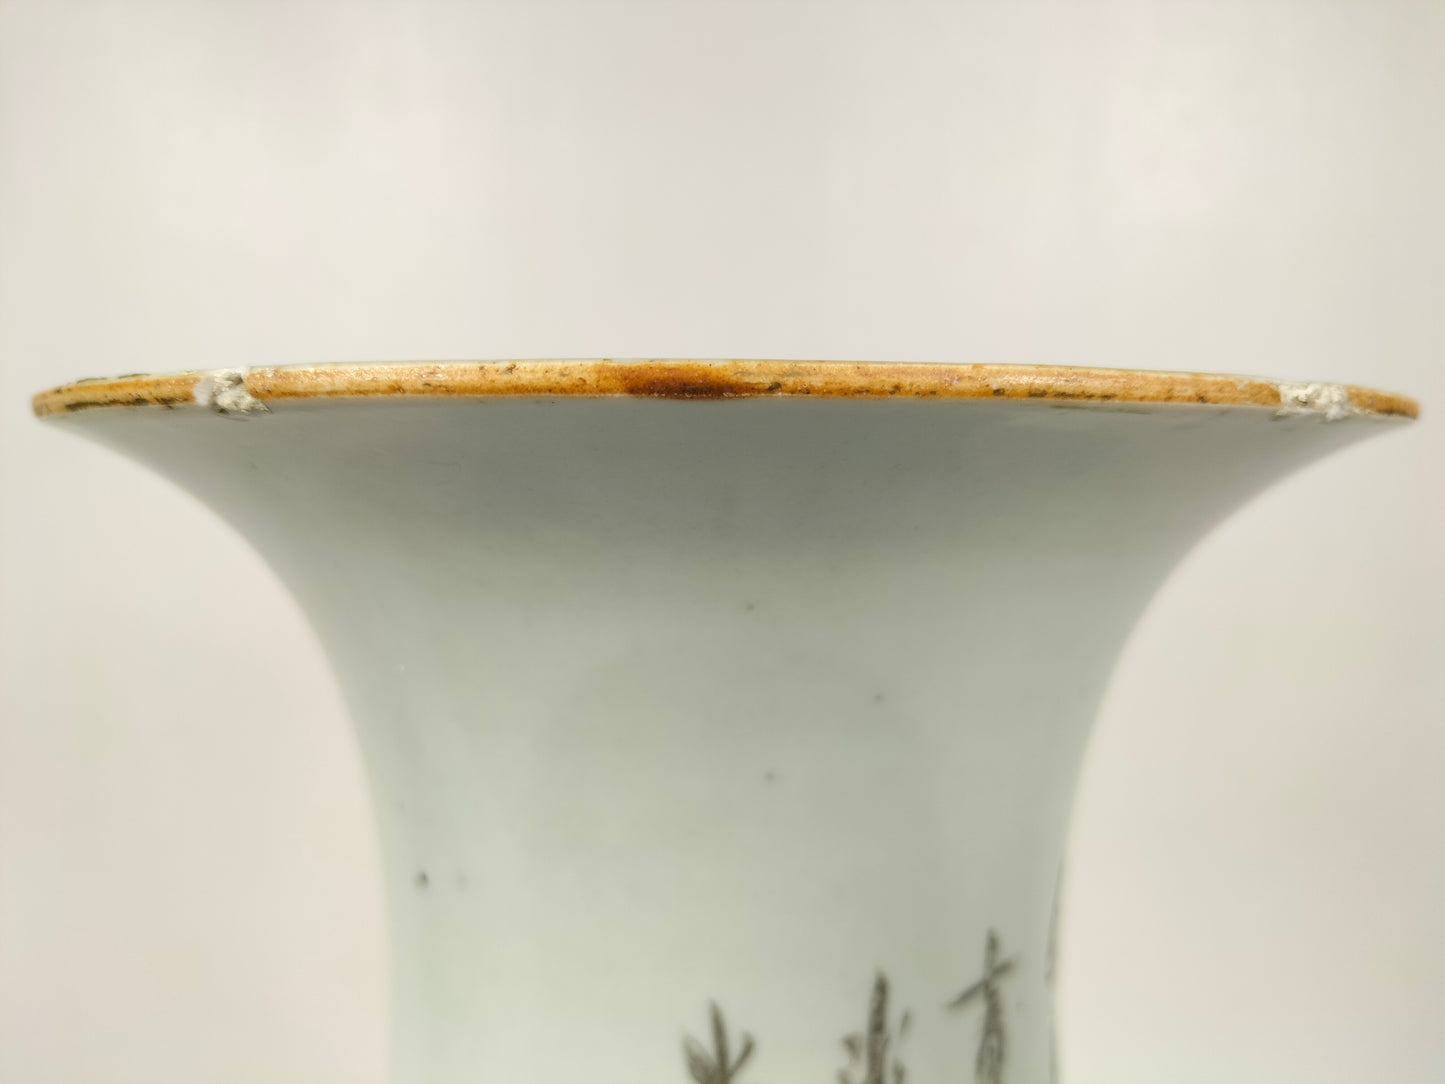 Antigo vaso chinês decorado com cena de jardim // Período da República (1912-1949)